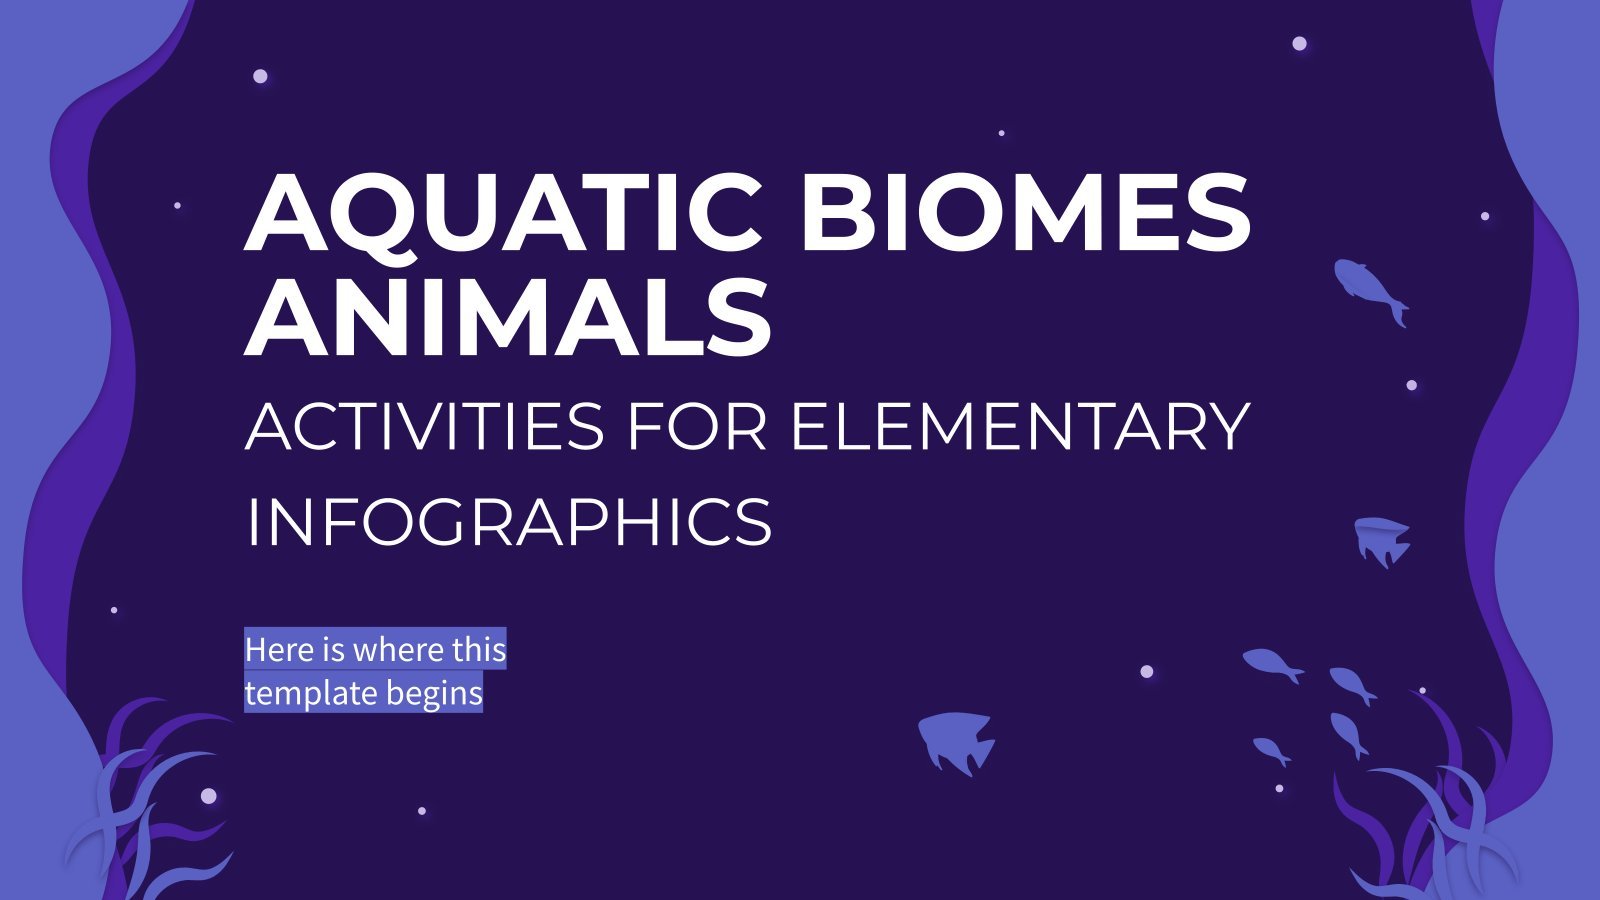 초등생을 위한 수생 생물군계 동물 활동 인포그래픽 프레젠테이션 템플릿